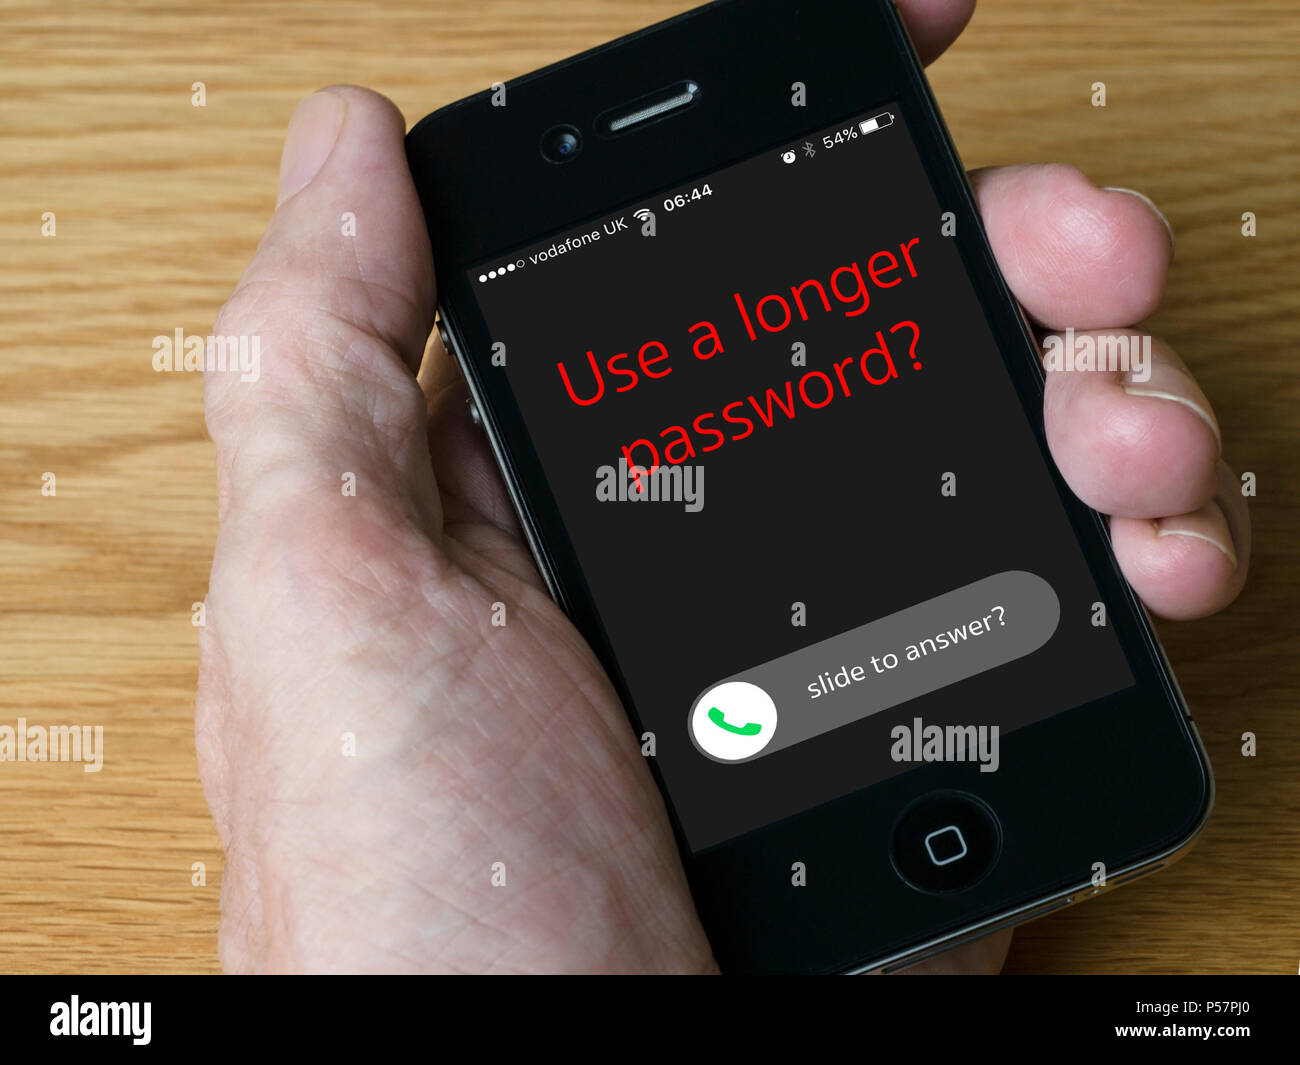 Notion de droit - à la suite de la divulgation de l'GrayKey iPhone unlocker il est recommandé d'utiliser plus longtemps, plus fort de codes / mots de passe. Banque D'Images